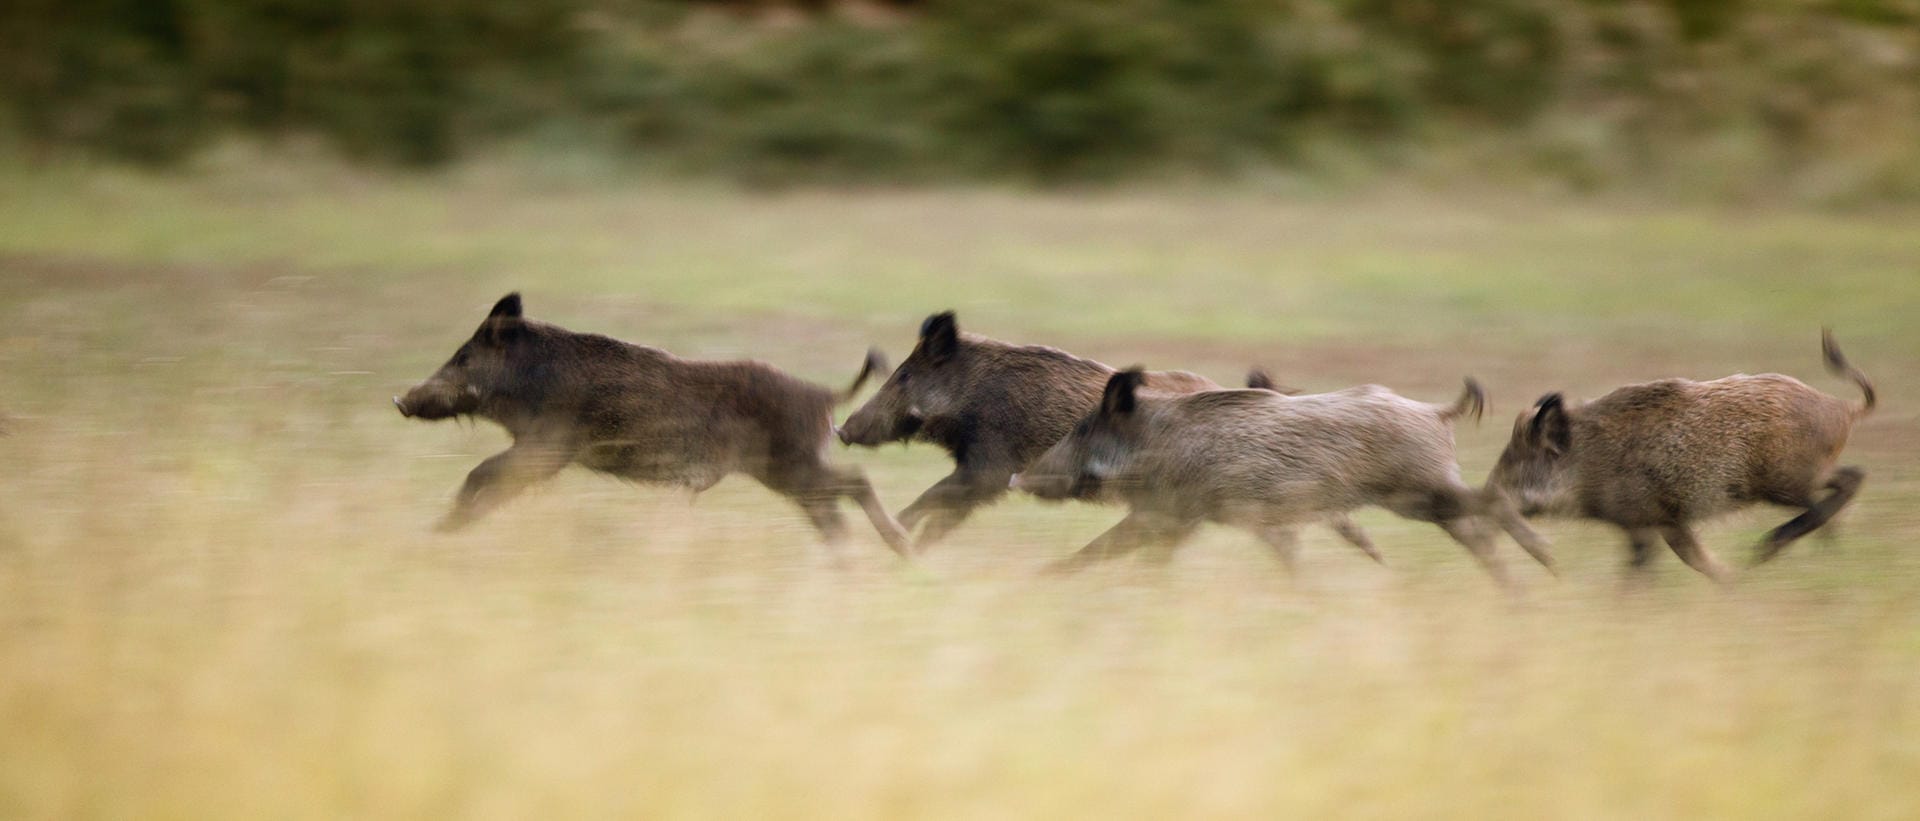 Verdammt schnell im Wald unterwegs: Wildschweine können bis zu 50 km/h schnell galoppieren und zu bis zu zwei Meter weiten Sprünge ansetzen. Vor ihnen wegzulaufen ist daher ziemlich sinnlos.